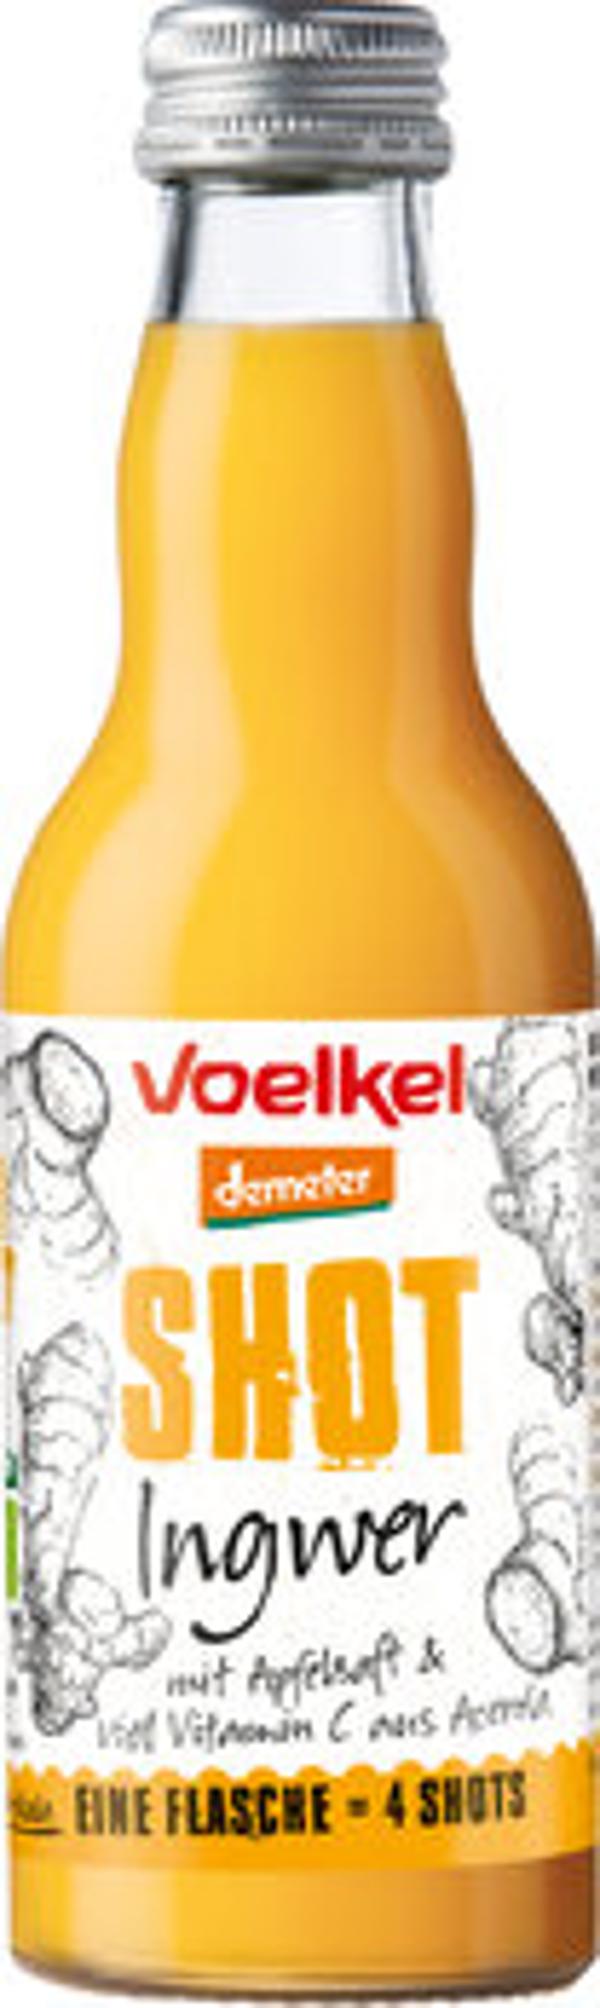 Produktbild von Voelkel Shot Ingwer Mehrweg 0,2l